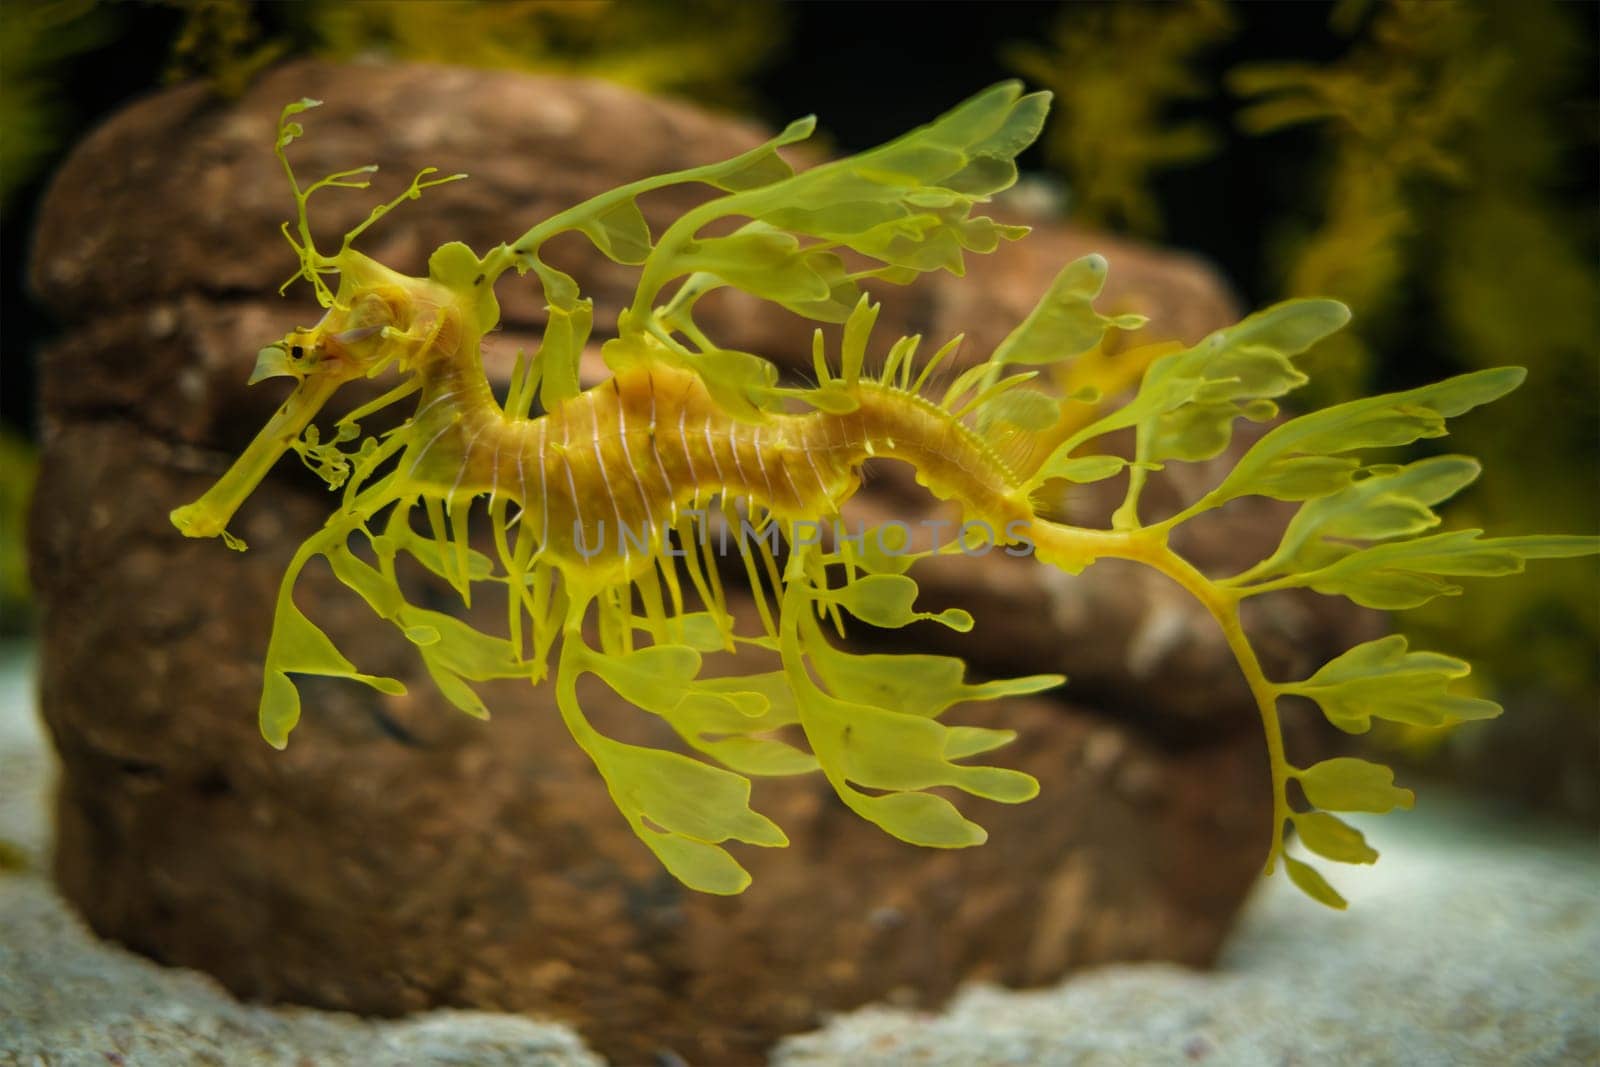 Leafy Seadragon Phycodurus eques fish underwater by dimol